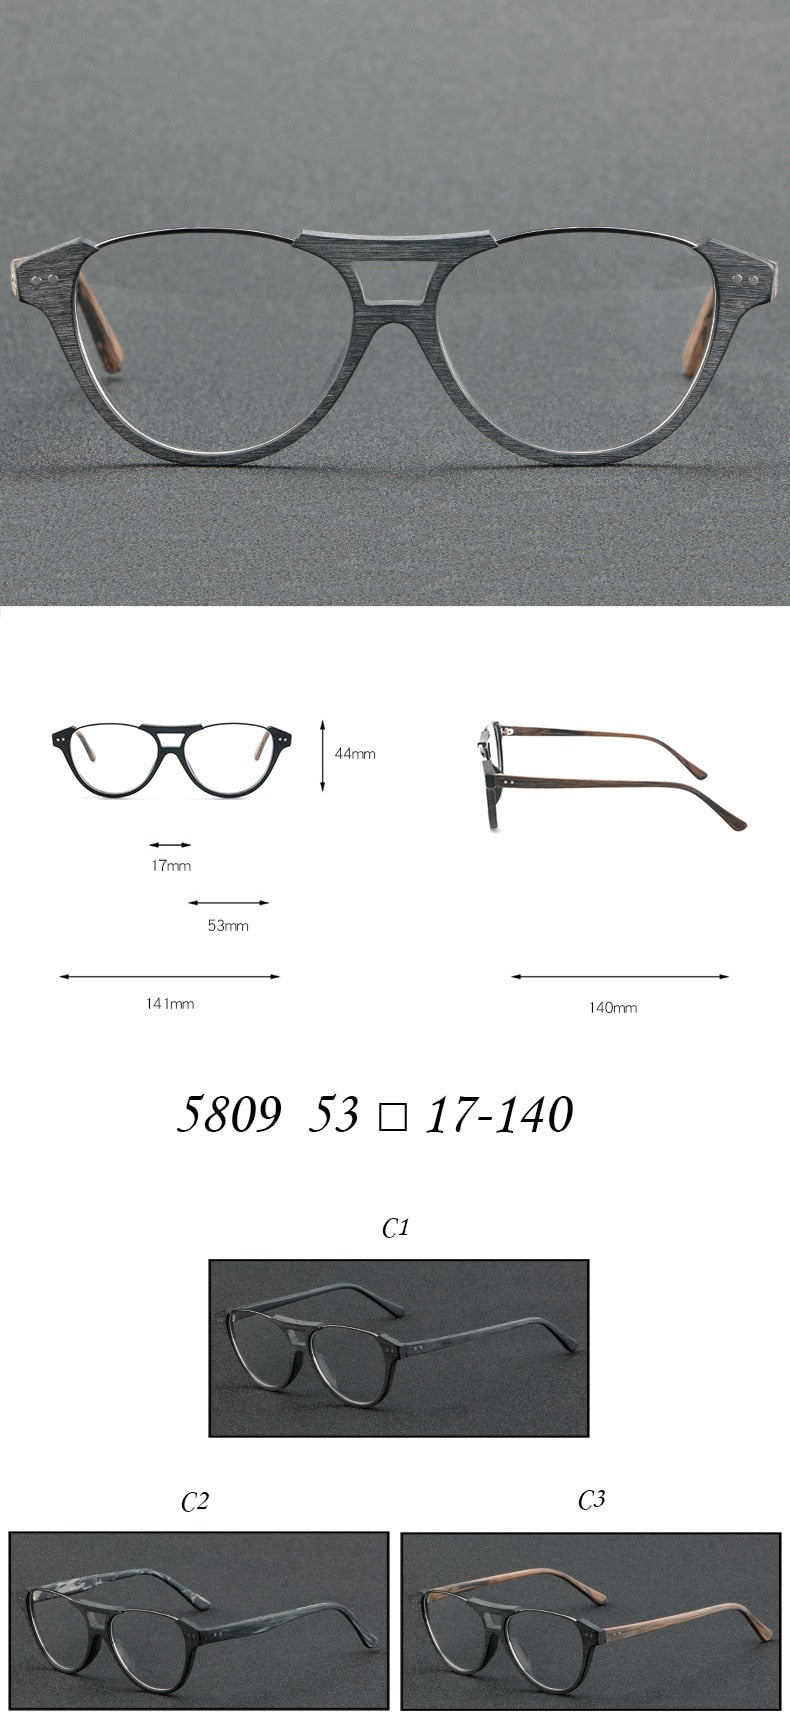 Cubojue Unisex Full Rim Round Wood Acetate Alloy Myopic Reading Glasses 5809 Reading Glasses Cubojue   